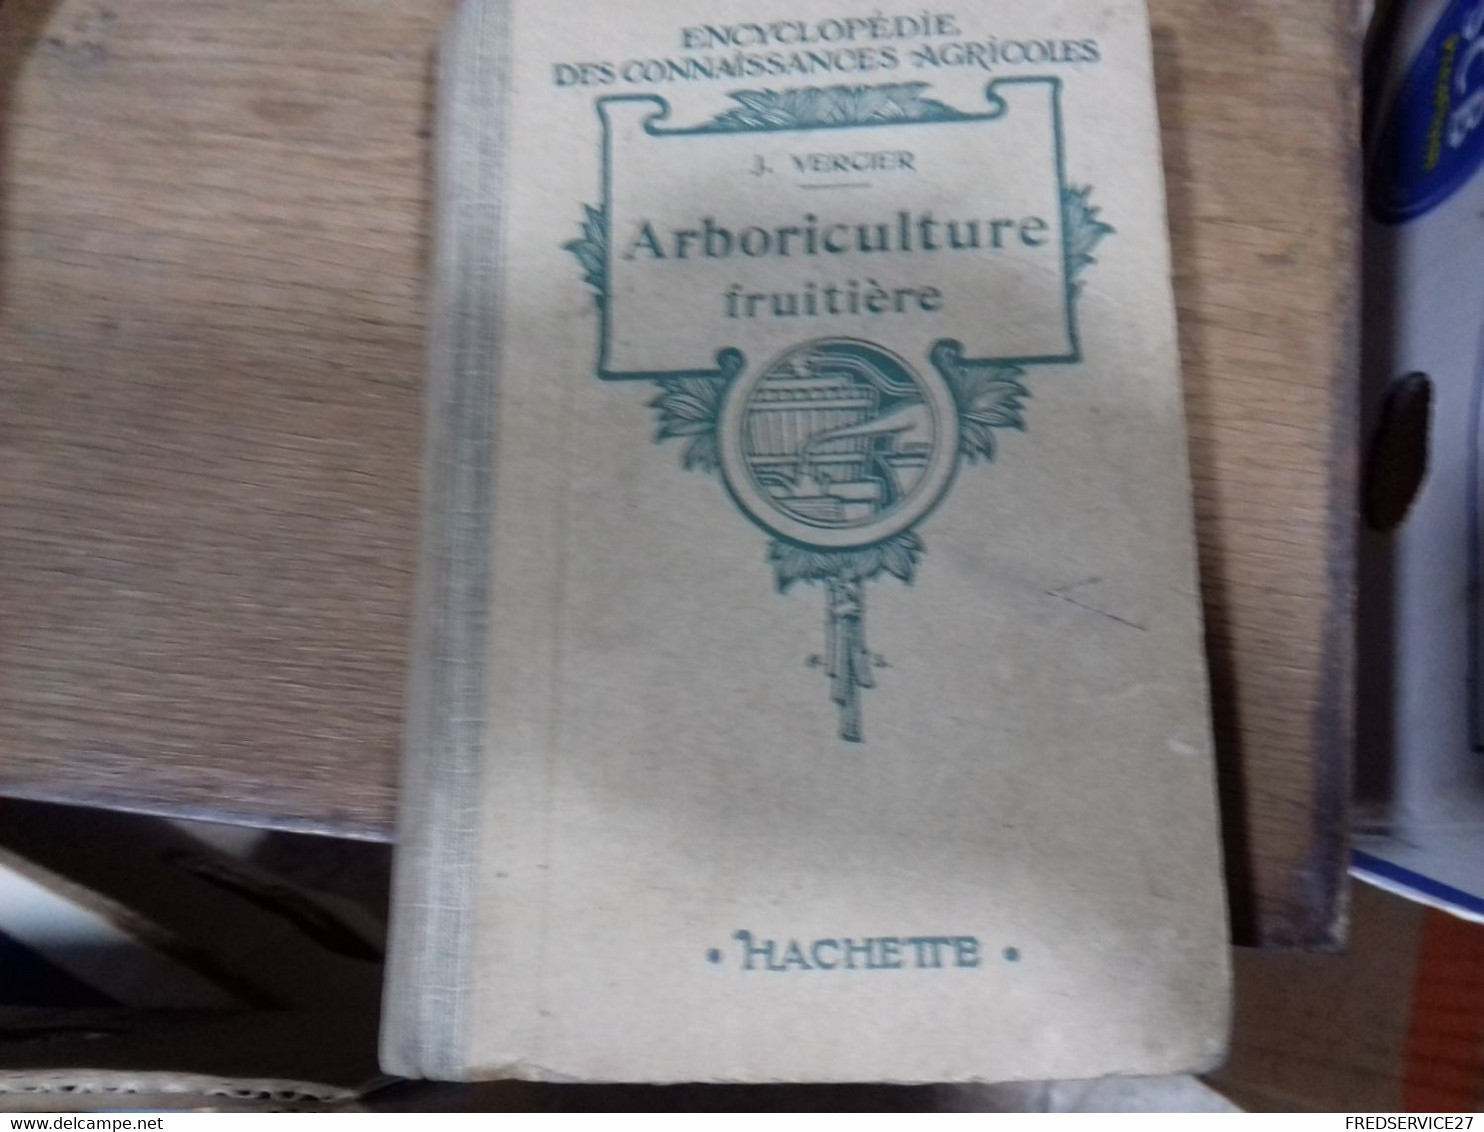 43  //   ENCYCLOPEDIE DES CONNAISSANCES AGRICOLES  ARBORICULTURE FRUITIERE    HACHETTE - Encyclopédies